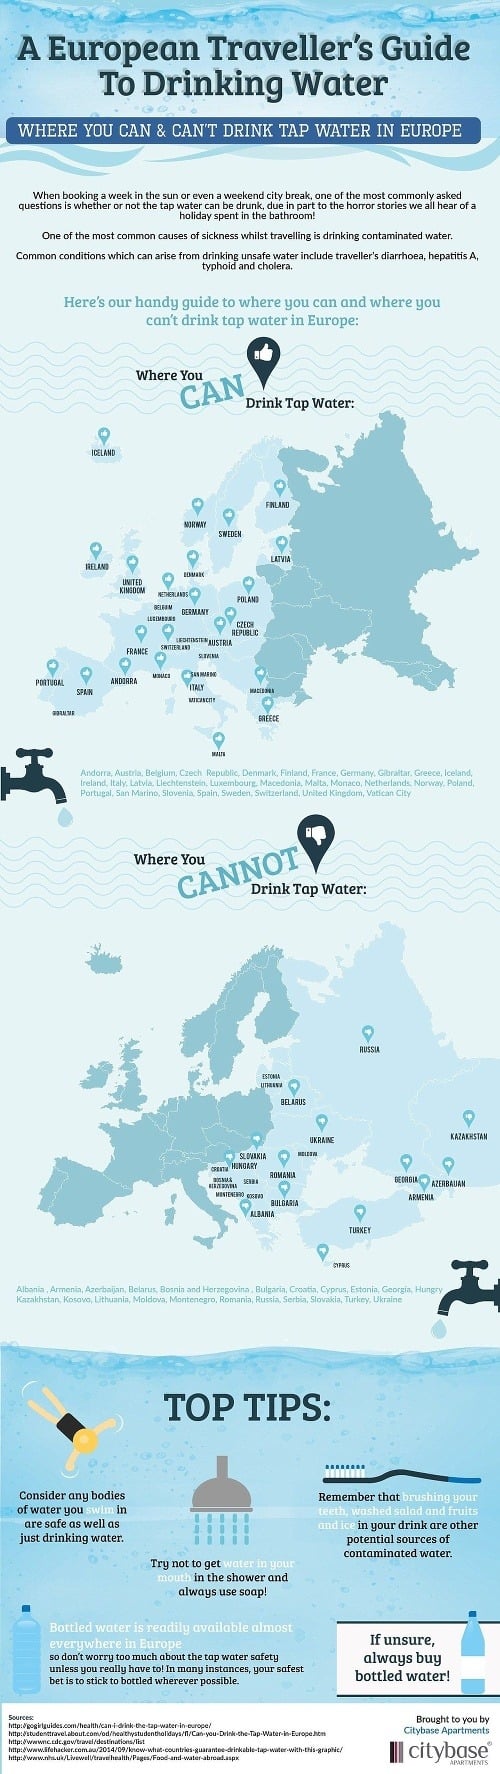 Na Slovensku vraj nemáme kvalitnú pitnú vodu